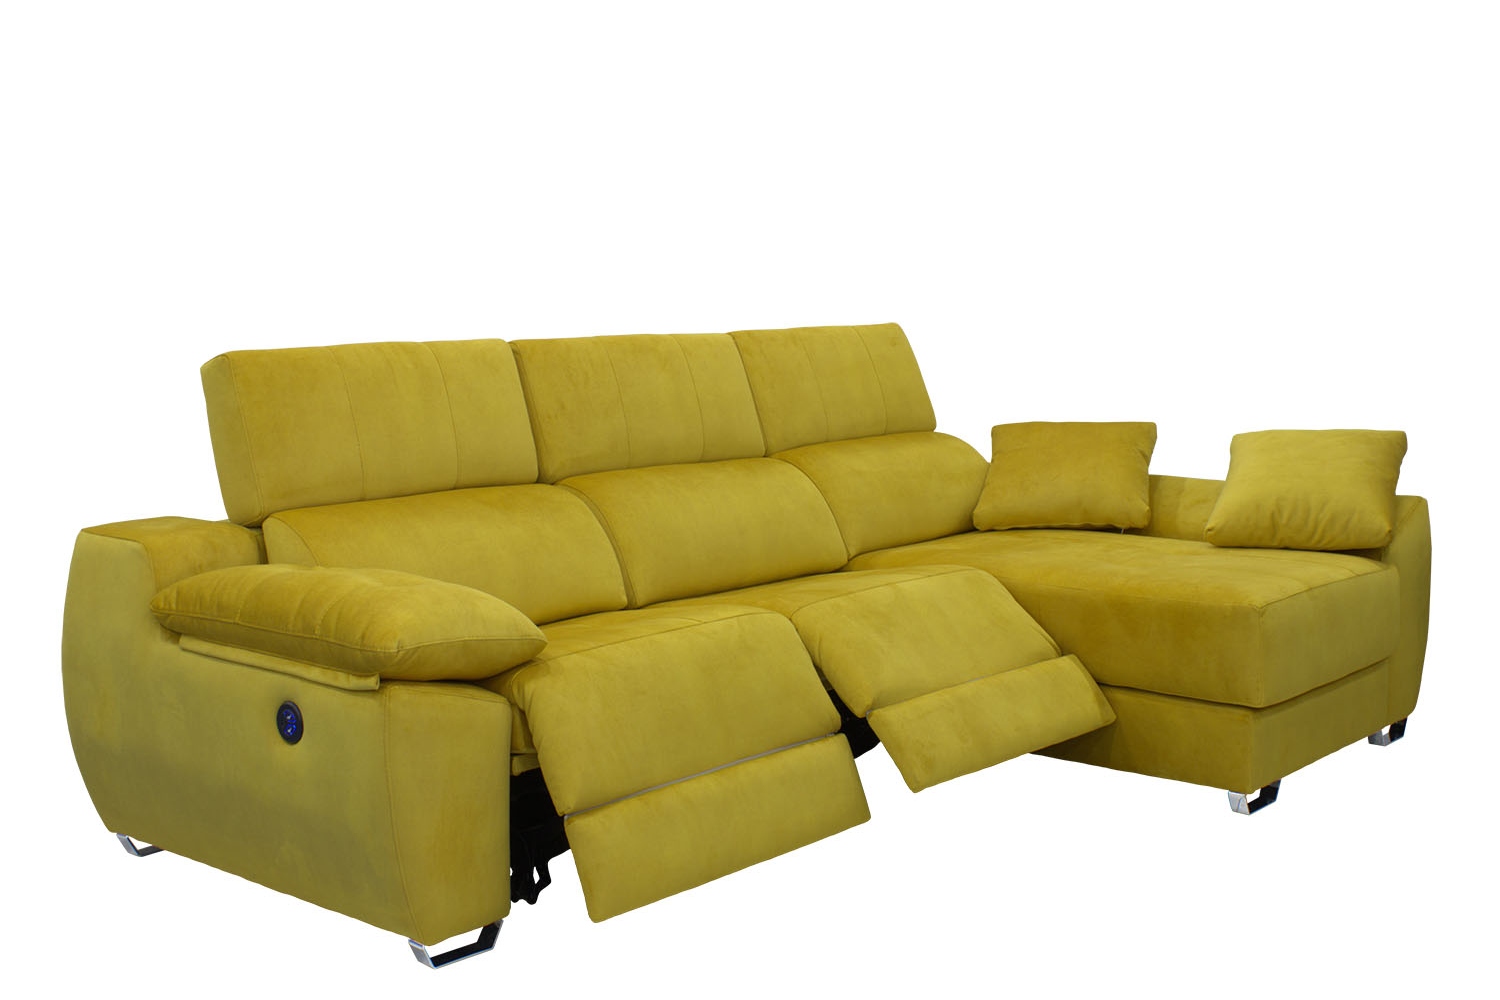 sofa relax con motor Comprar en tienda de muebles baratos